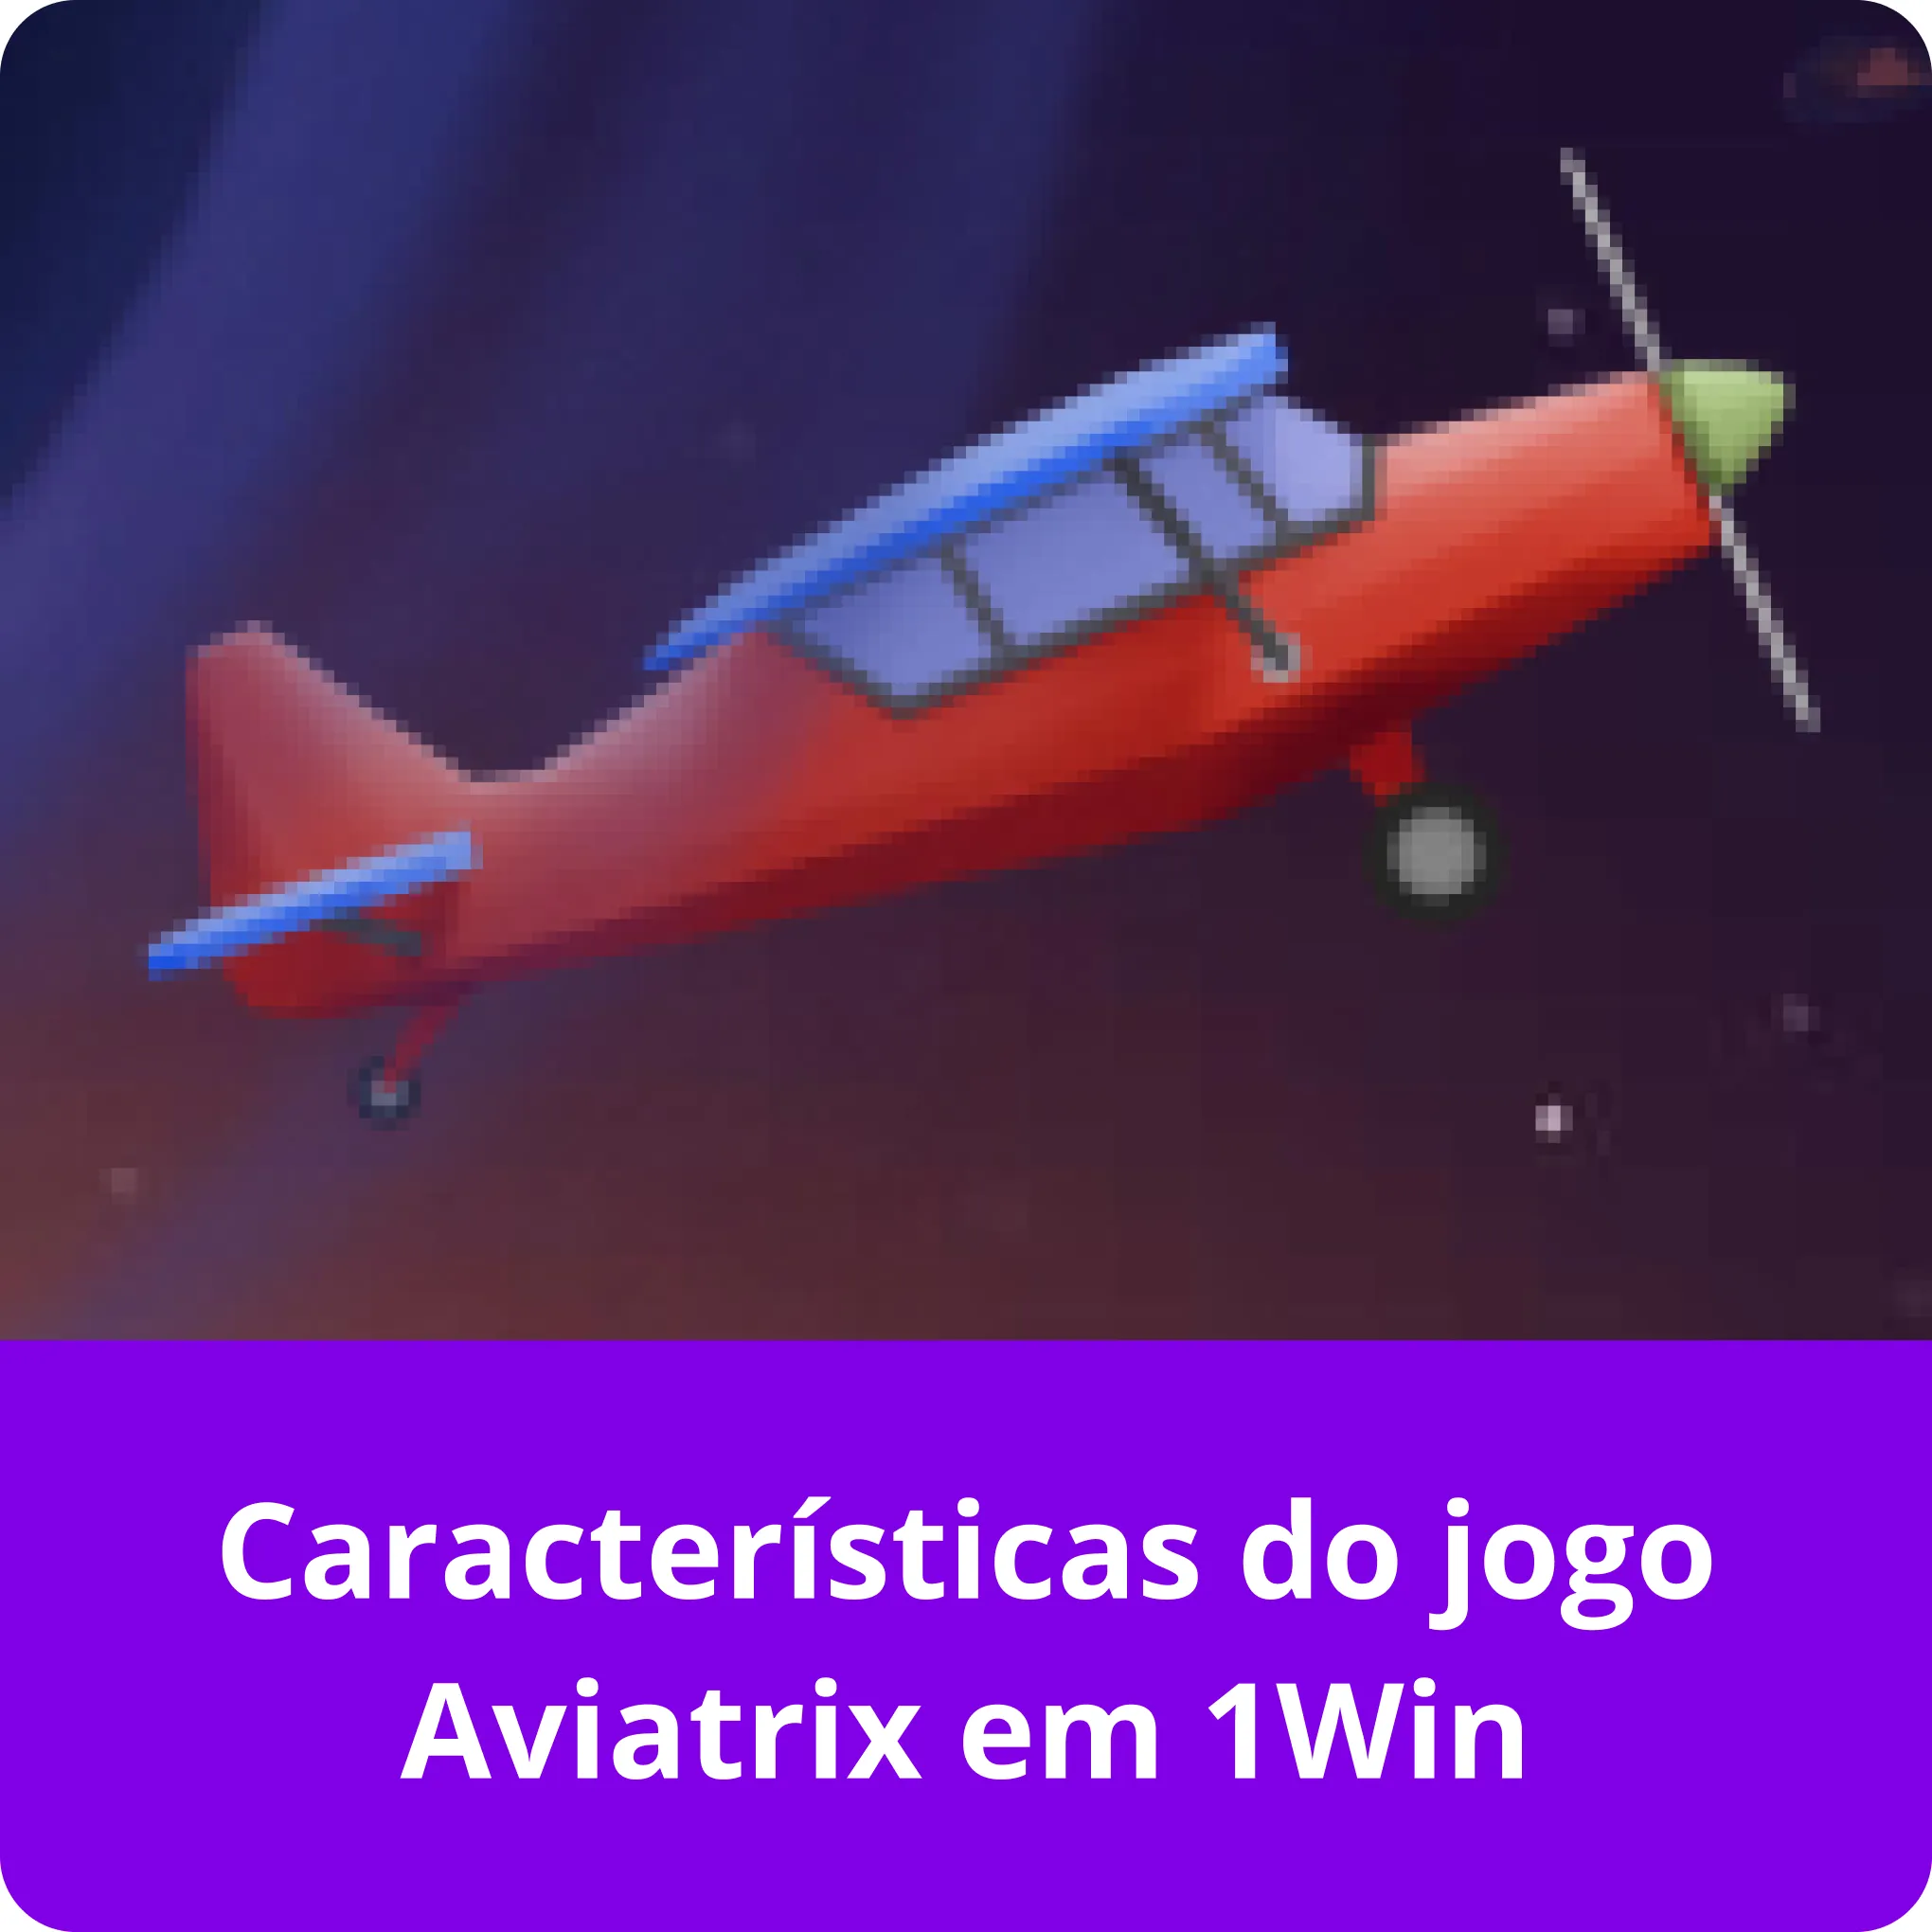 1win aviatrix características do jogo